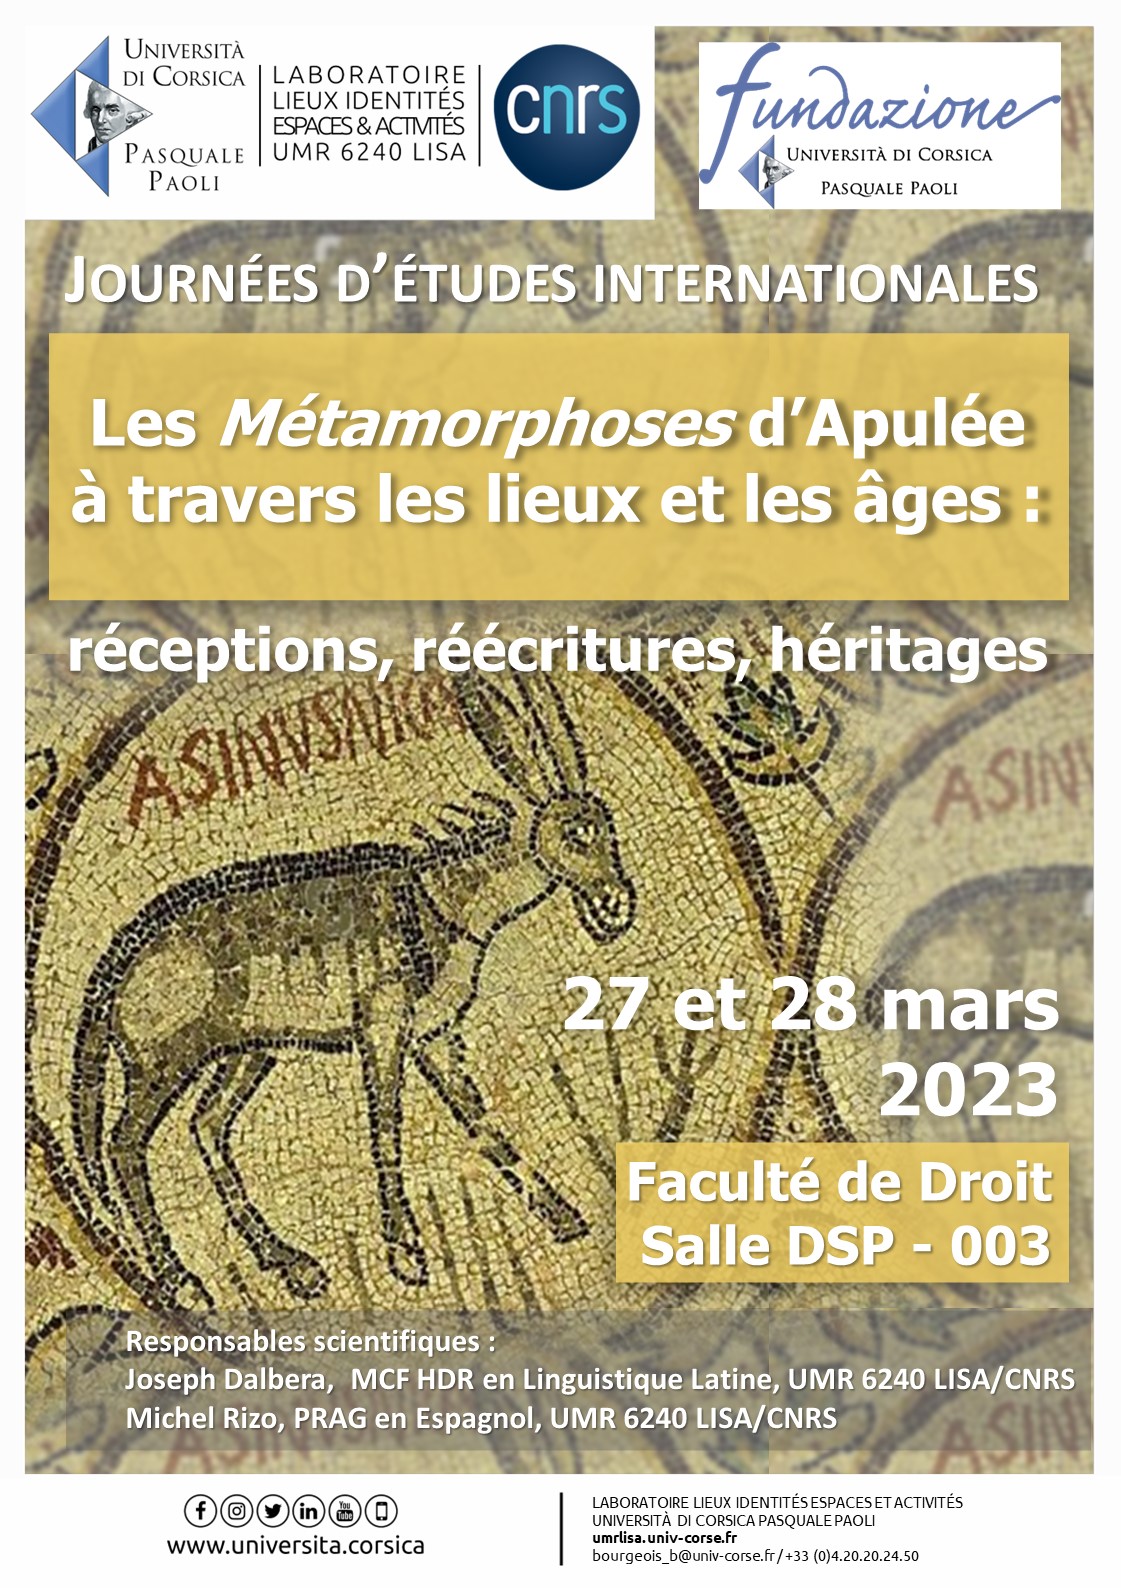 Journées d’études internationales « Les Métamorphoses d’Apulée à travers les lieux et les âges : Réceptions, réécritures, héritages »